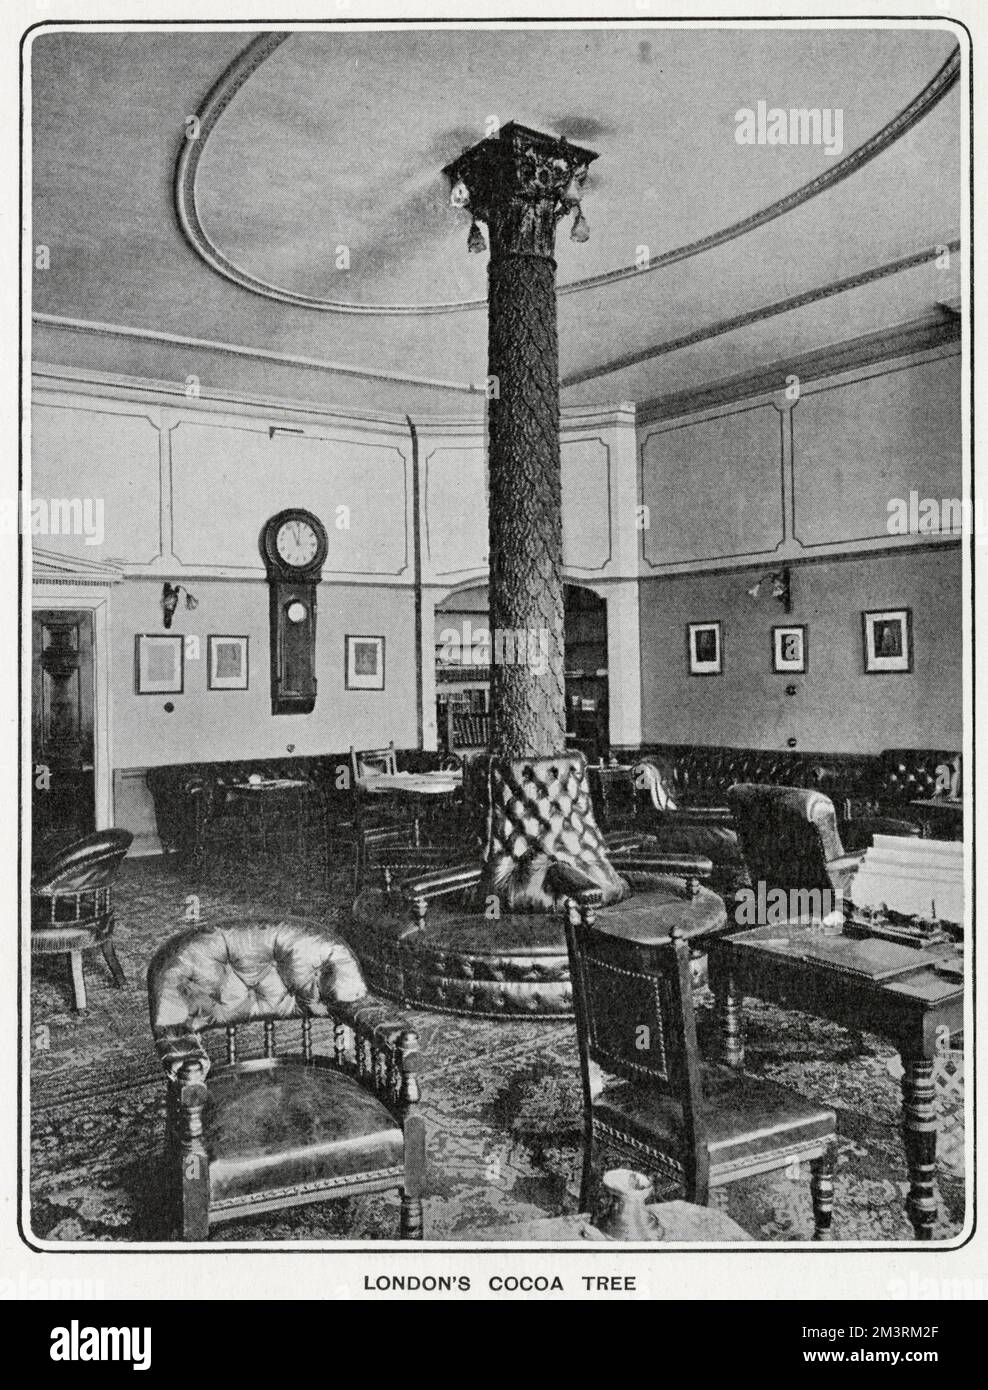 L'intérieur du Cocoa Tree Club, dit être le plus ancien club de Londres, montrant l'arbre, qui a traversé deux étages. C'était à l'origine une maison de chocolat Tory et aussi célèbre pour avoir été autrefois le Parti Jacobite H.Q. Lord Byron était membre. Banque D'Images